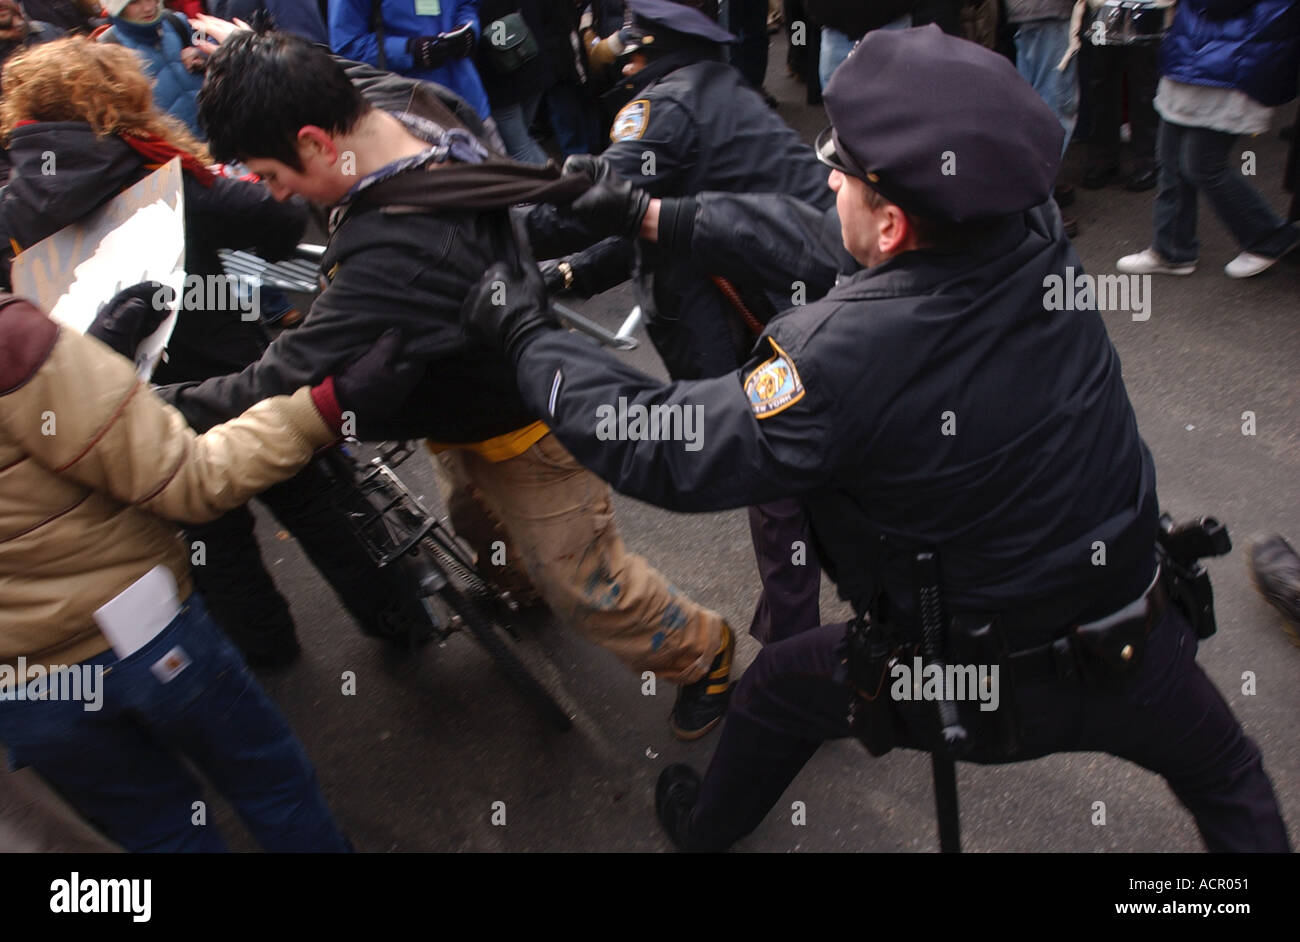 Polizisten verhaften Demonstrant während anti-Krieg-Proteste in New York City zu Beginn des Irak-Krieges Stockfoto